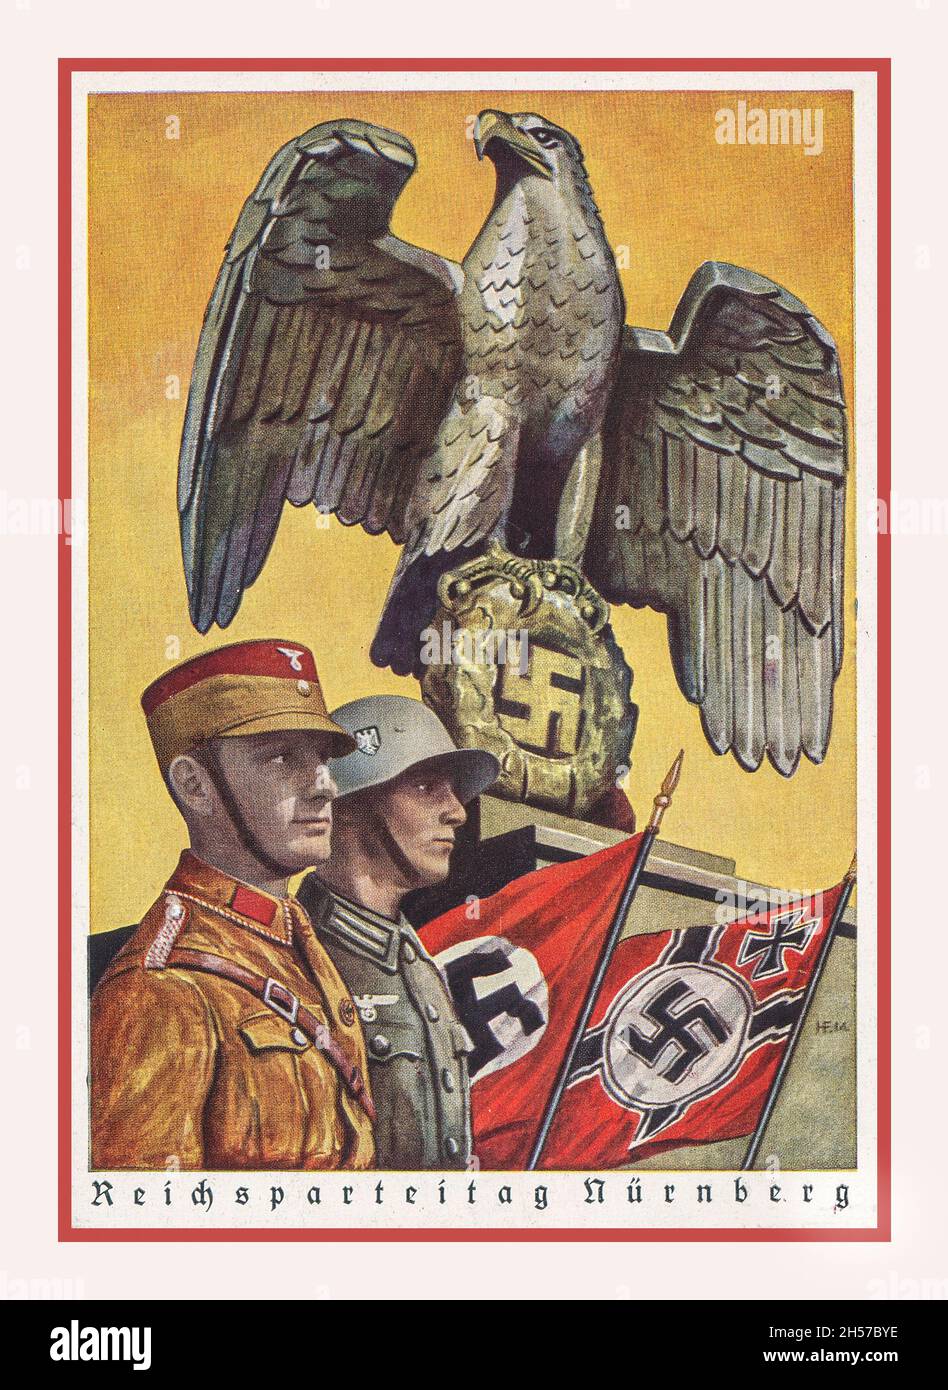 Ссср фашистская германия. Плакаты 2 мировой 3 Рейх. Третий Рейх пропаганда. Германская Империя и третий Рейх. Военные плакаты третьего рейха.